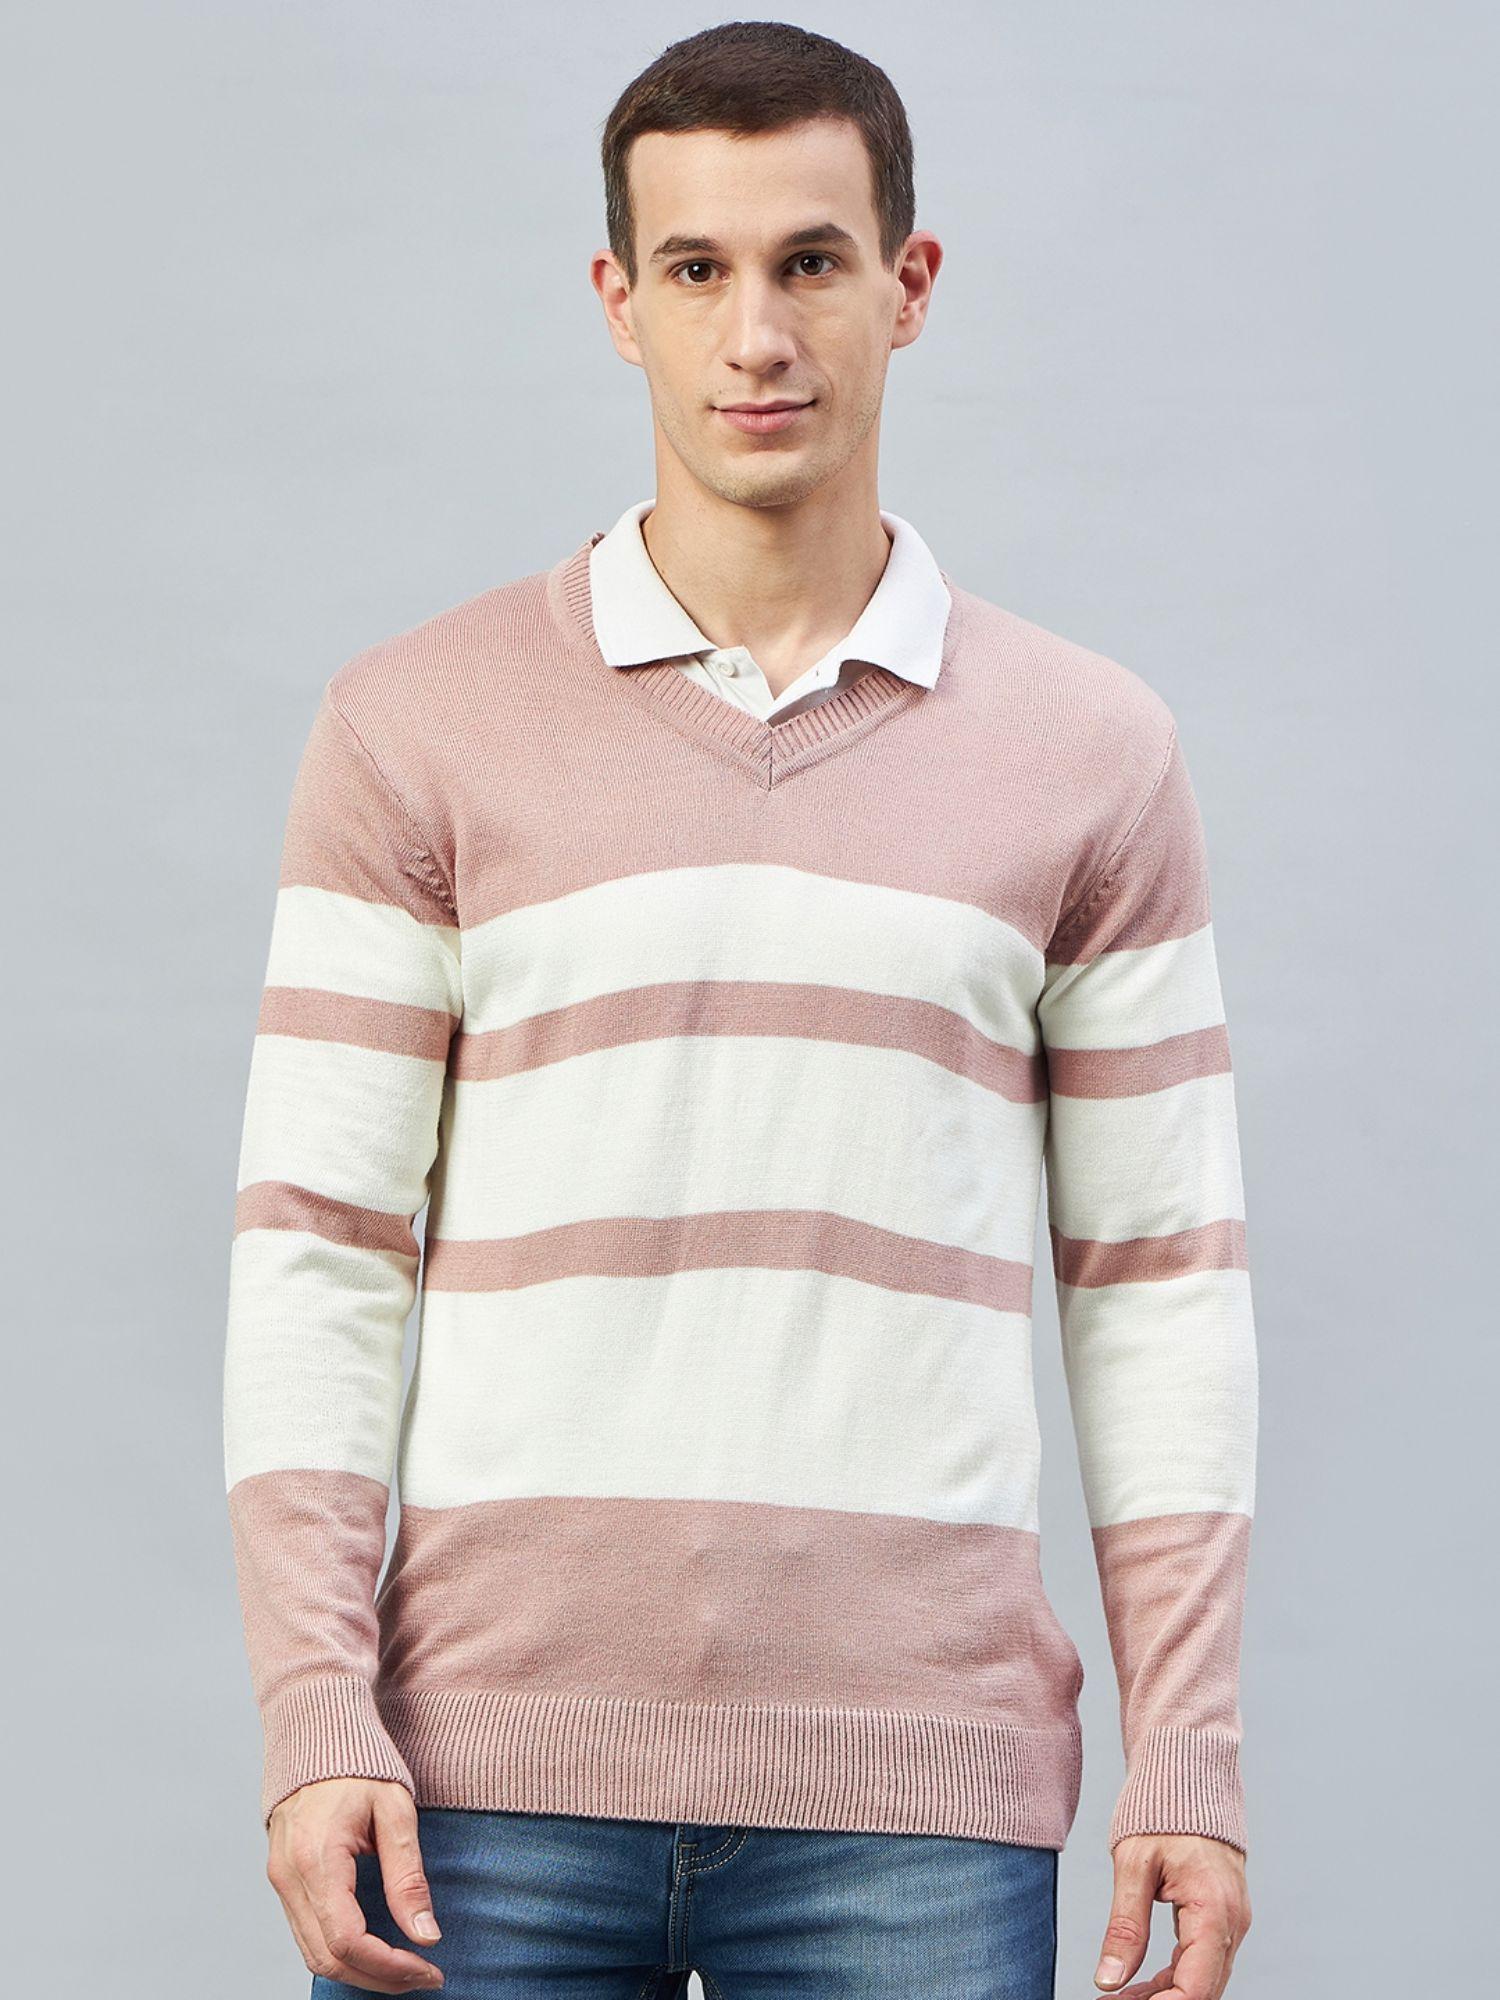 Pink V Neck Sweater